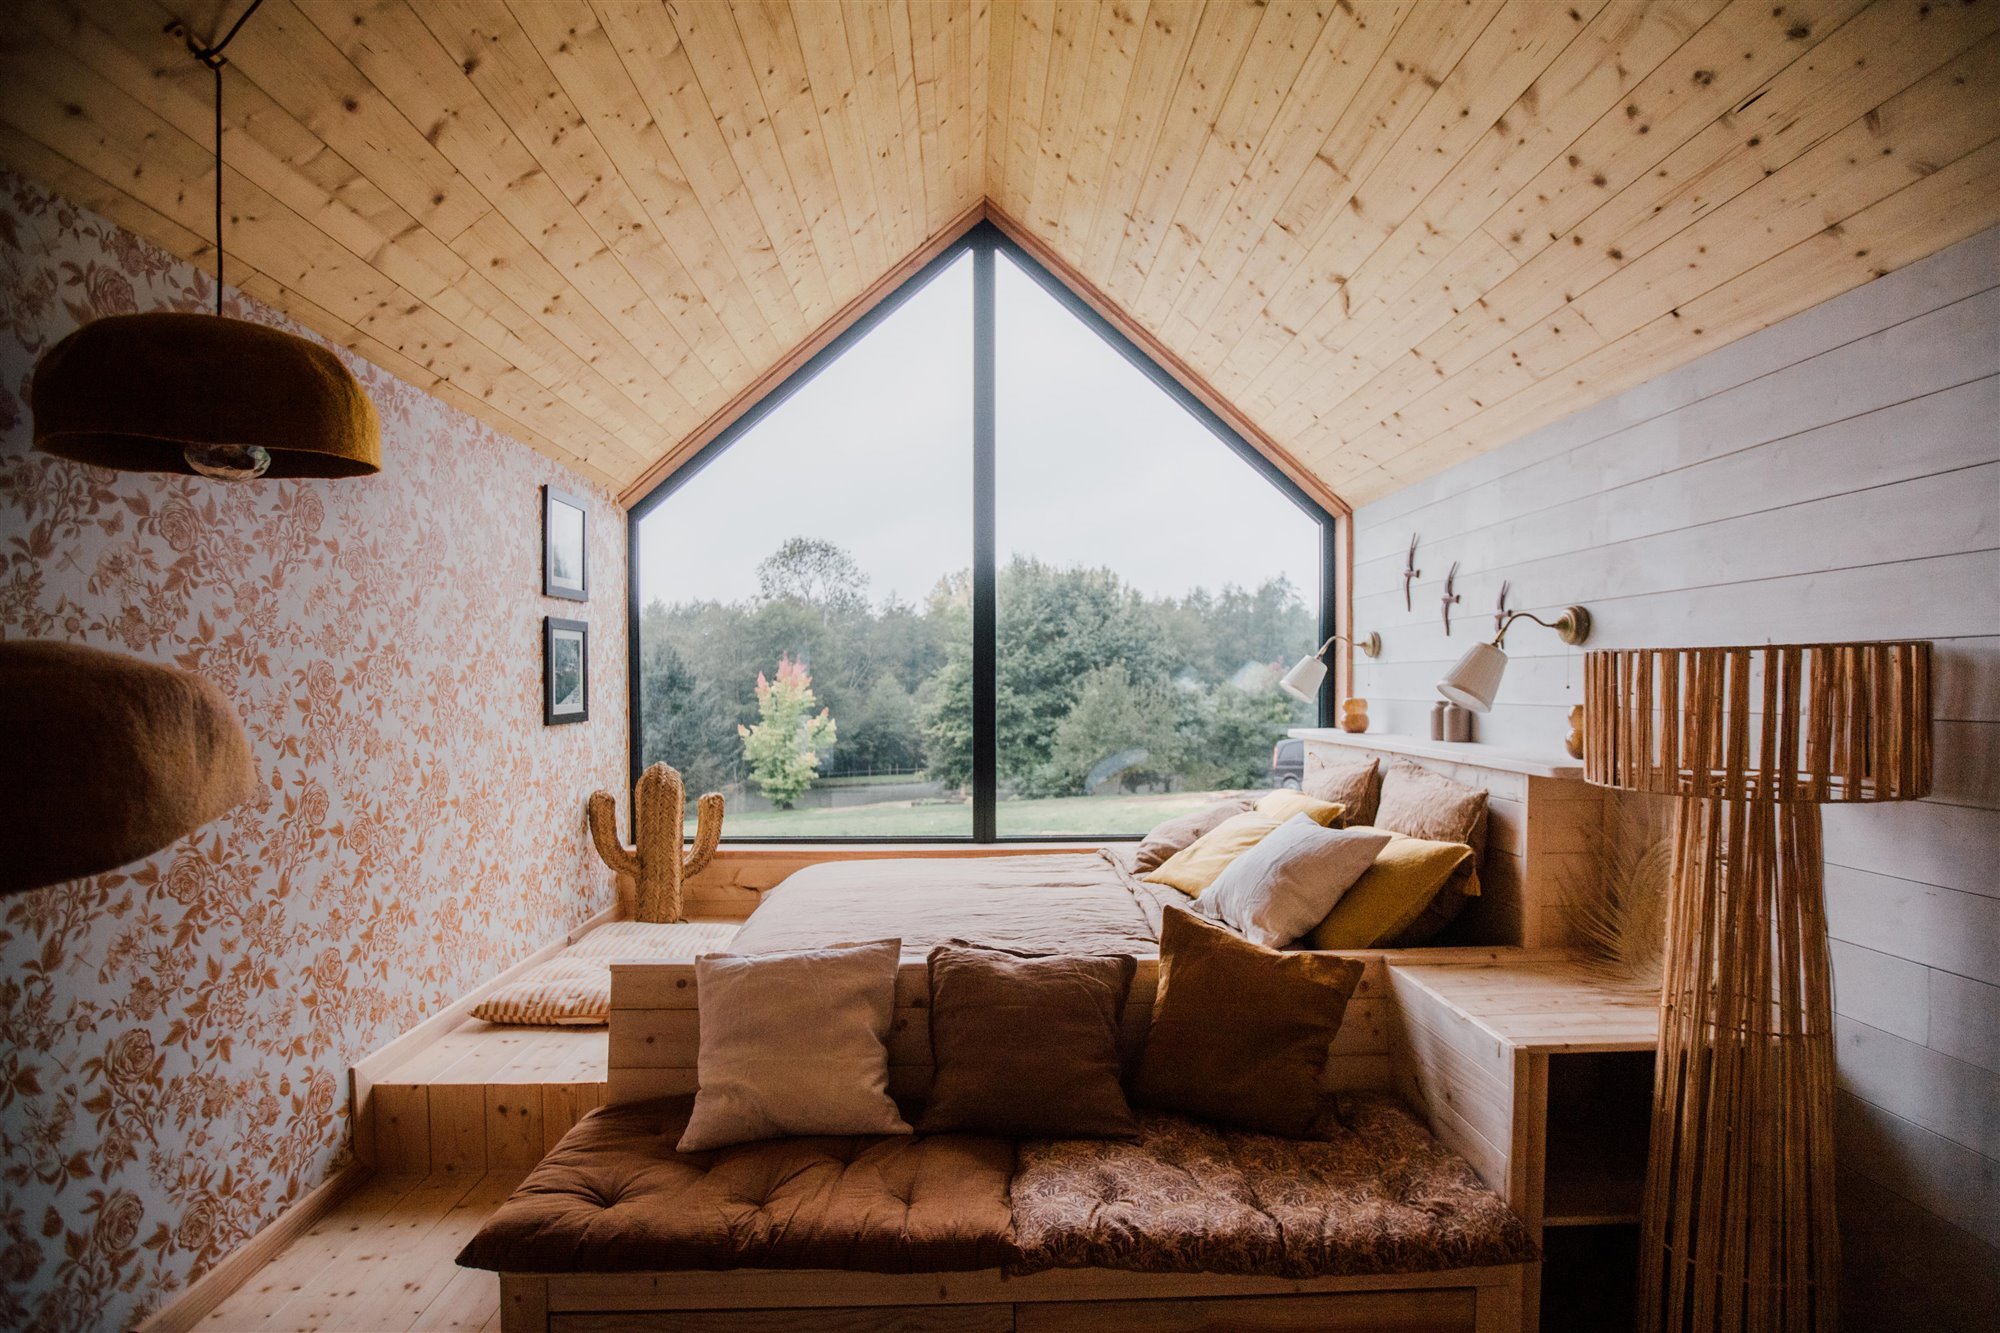 Dormitorio revestido de madera y papel pintado con cama de obra de madera.